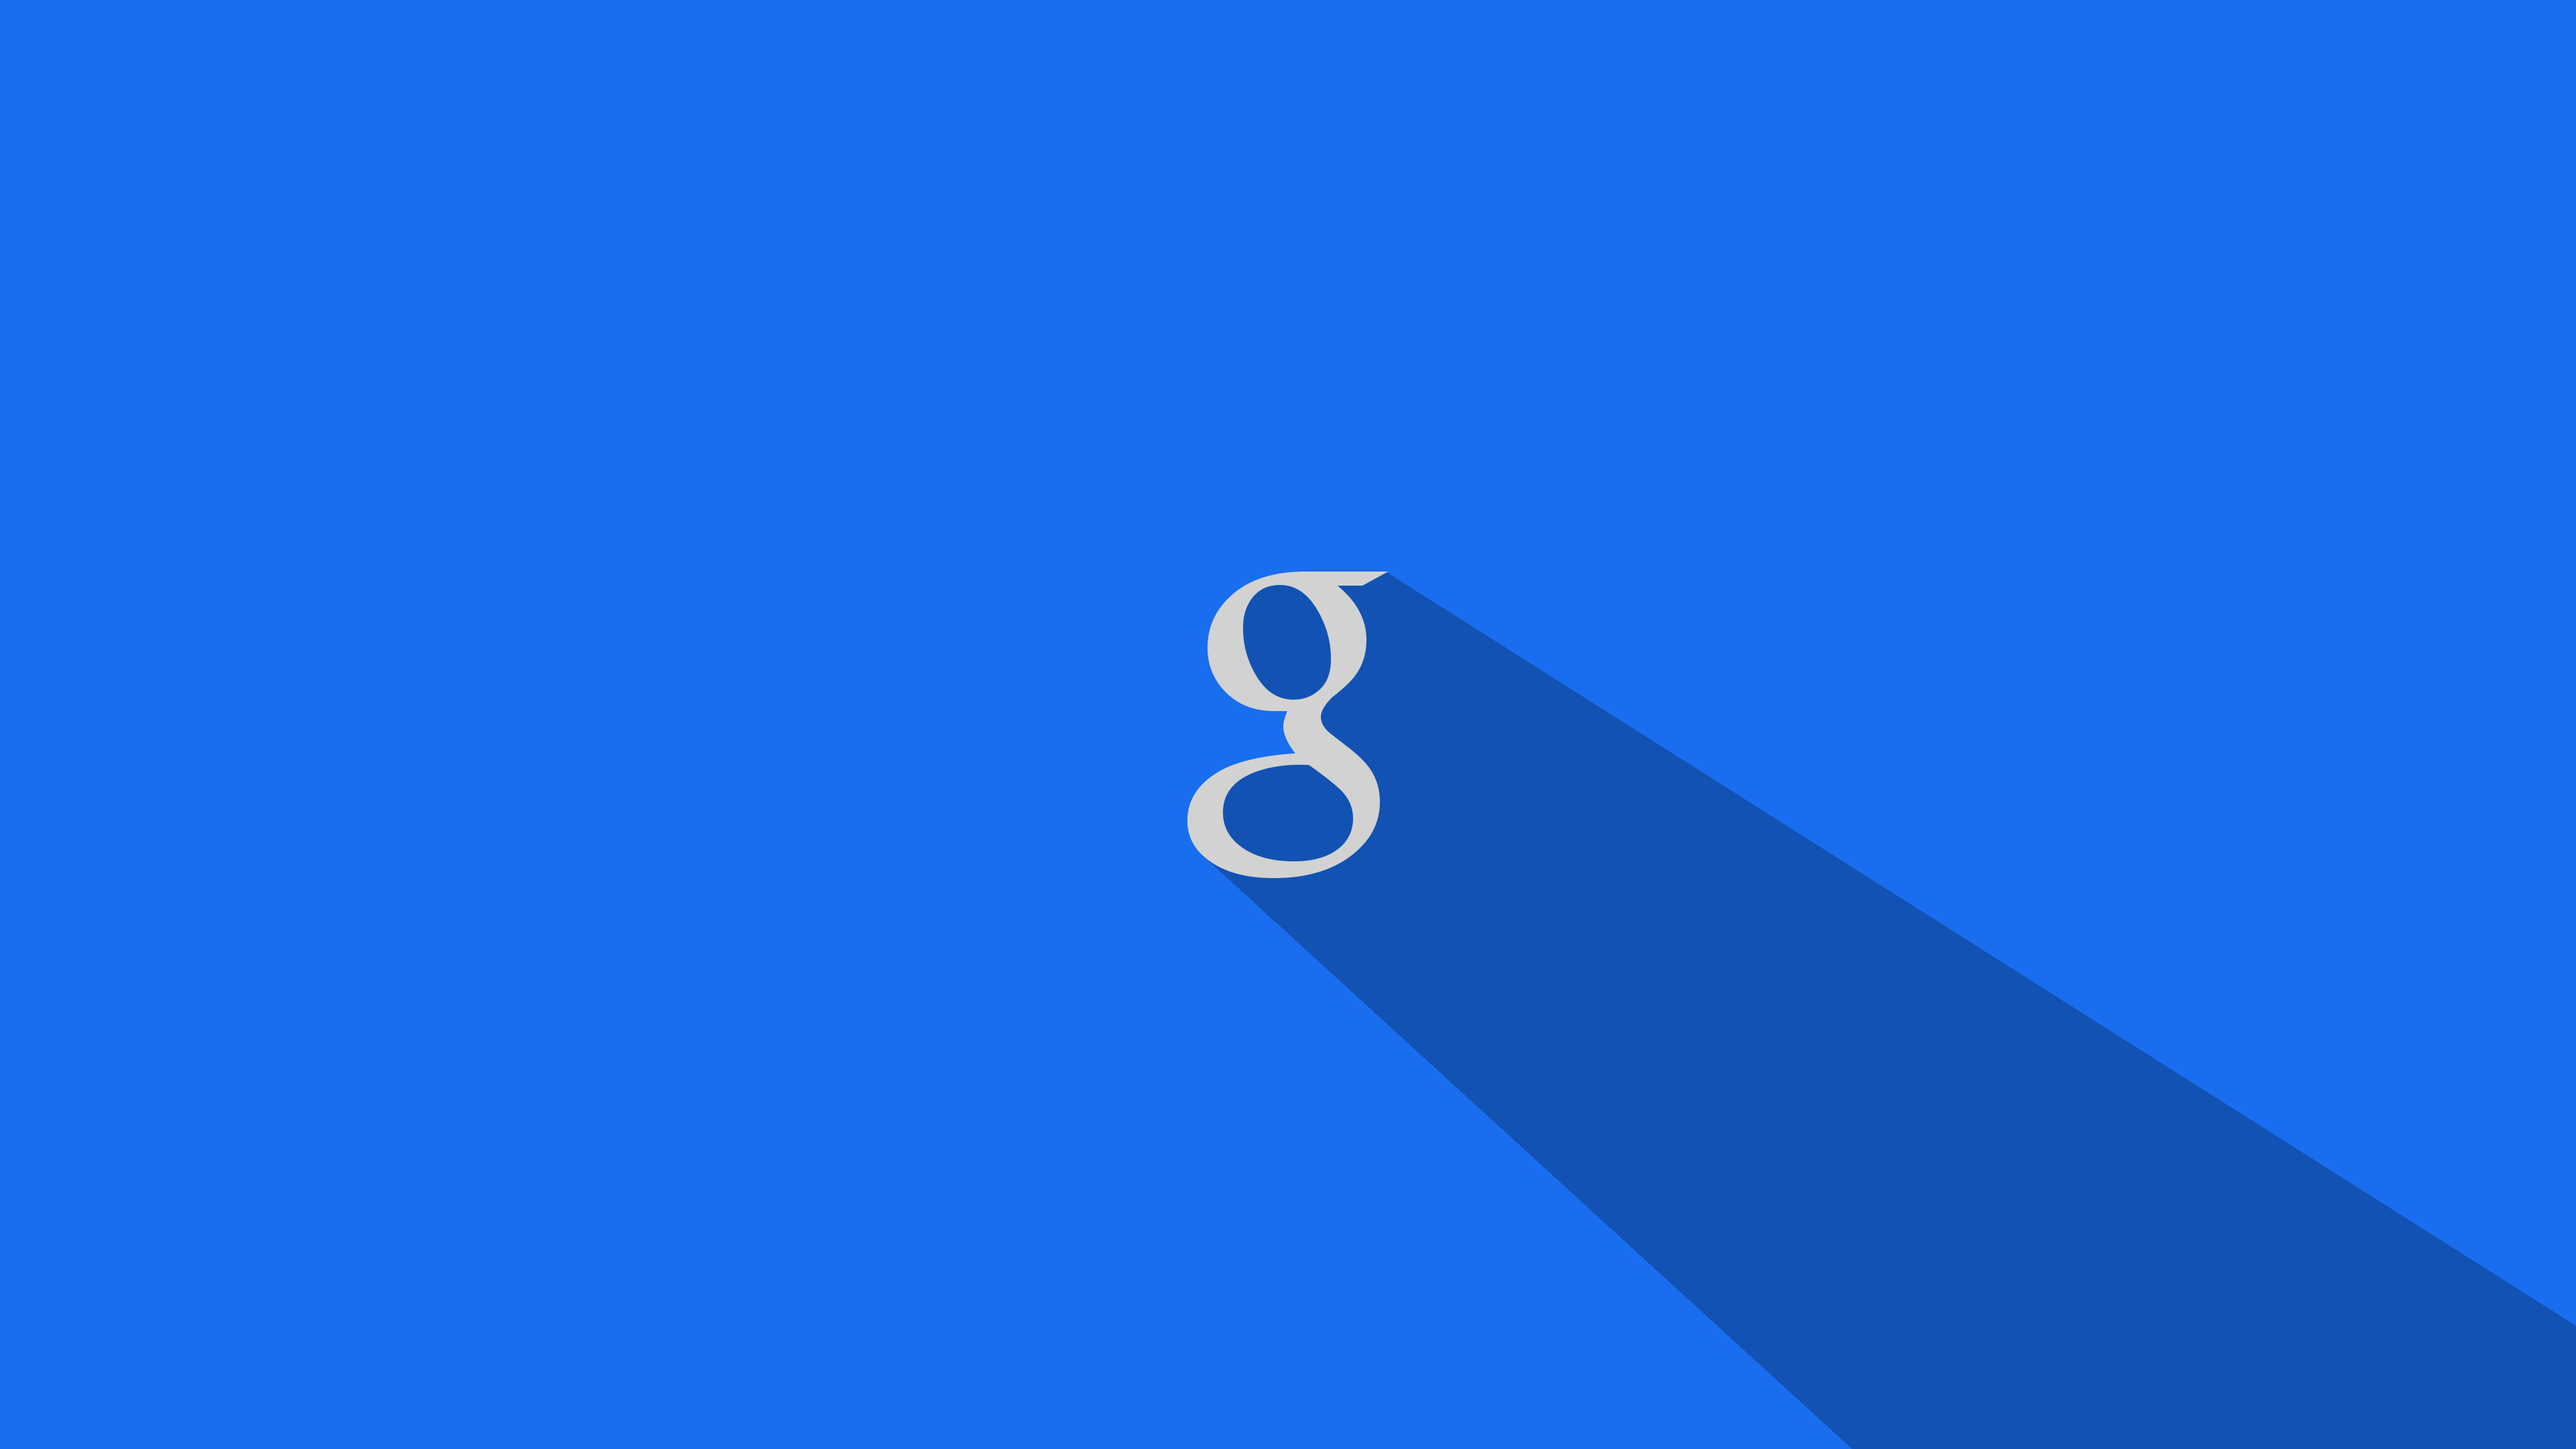 50+] Wallpapers for Google - WallpaperSafari